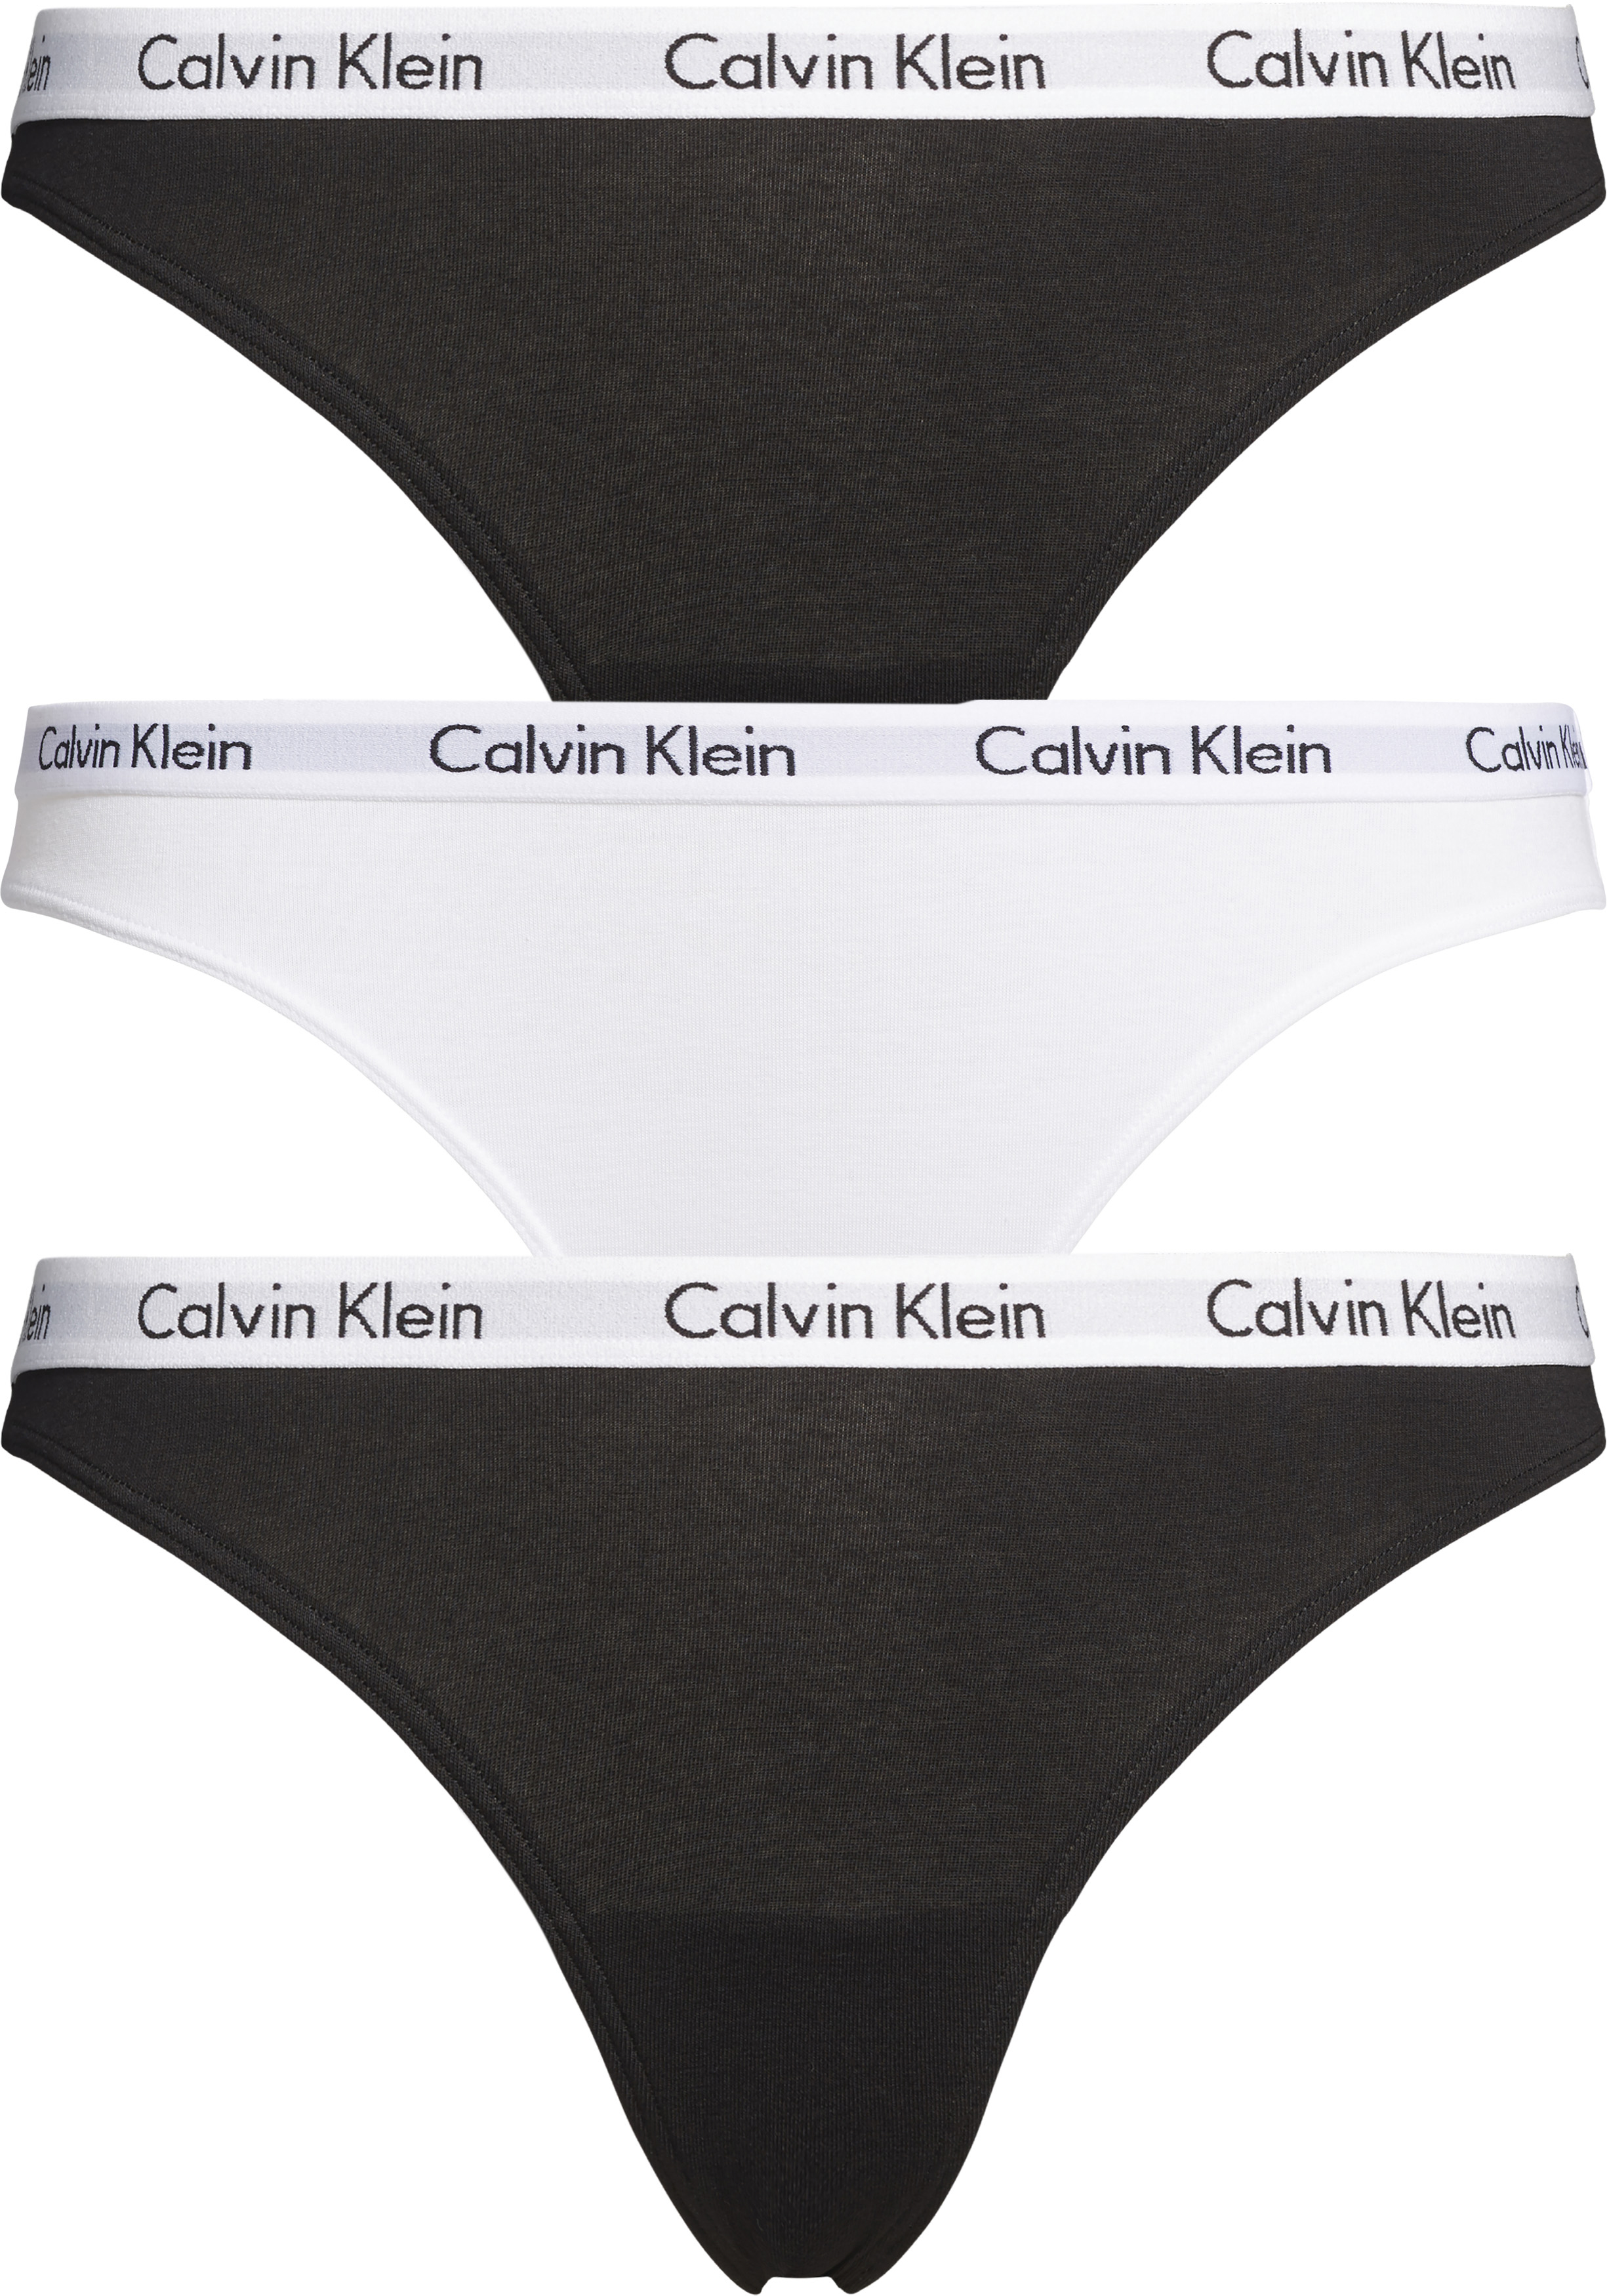 Regenjas Stemmen verontschuldigen Calvin Klein dames strings (3-pack), zwart, wit, zwart - Shop de nieuwste  voorjaarsmode